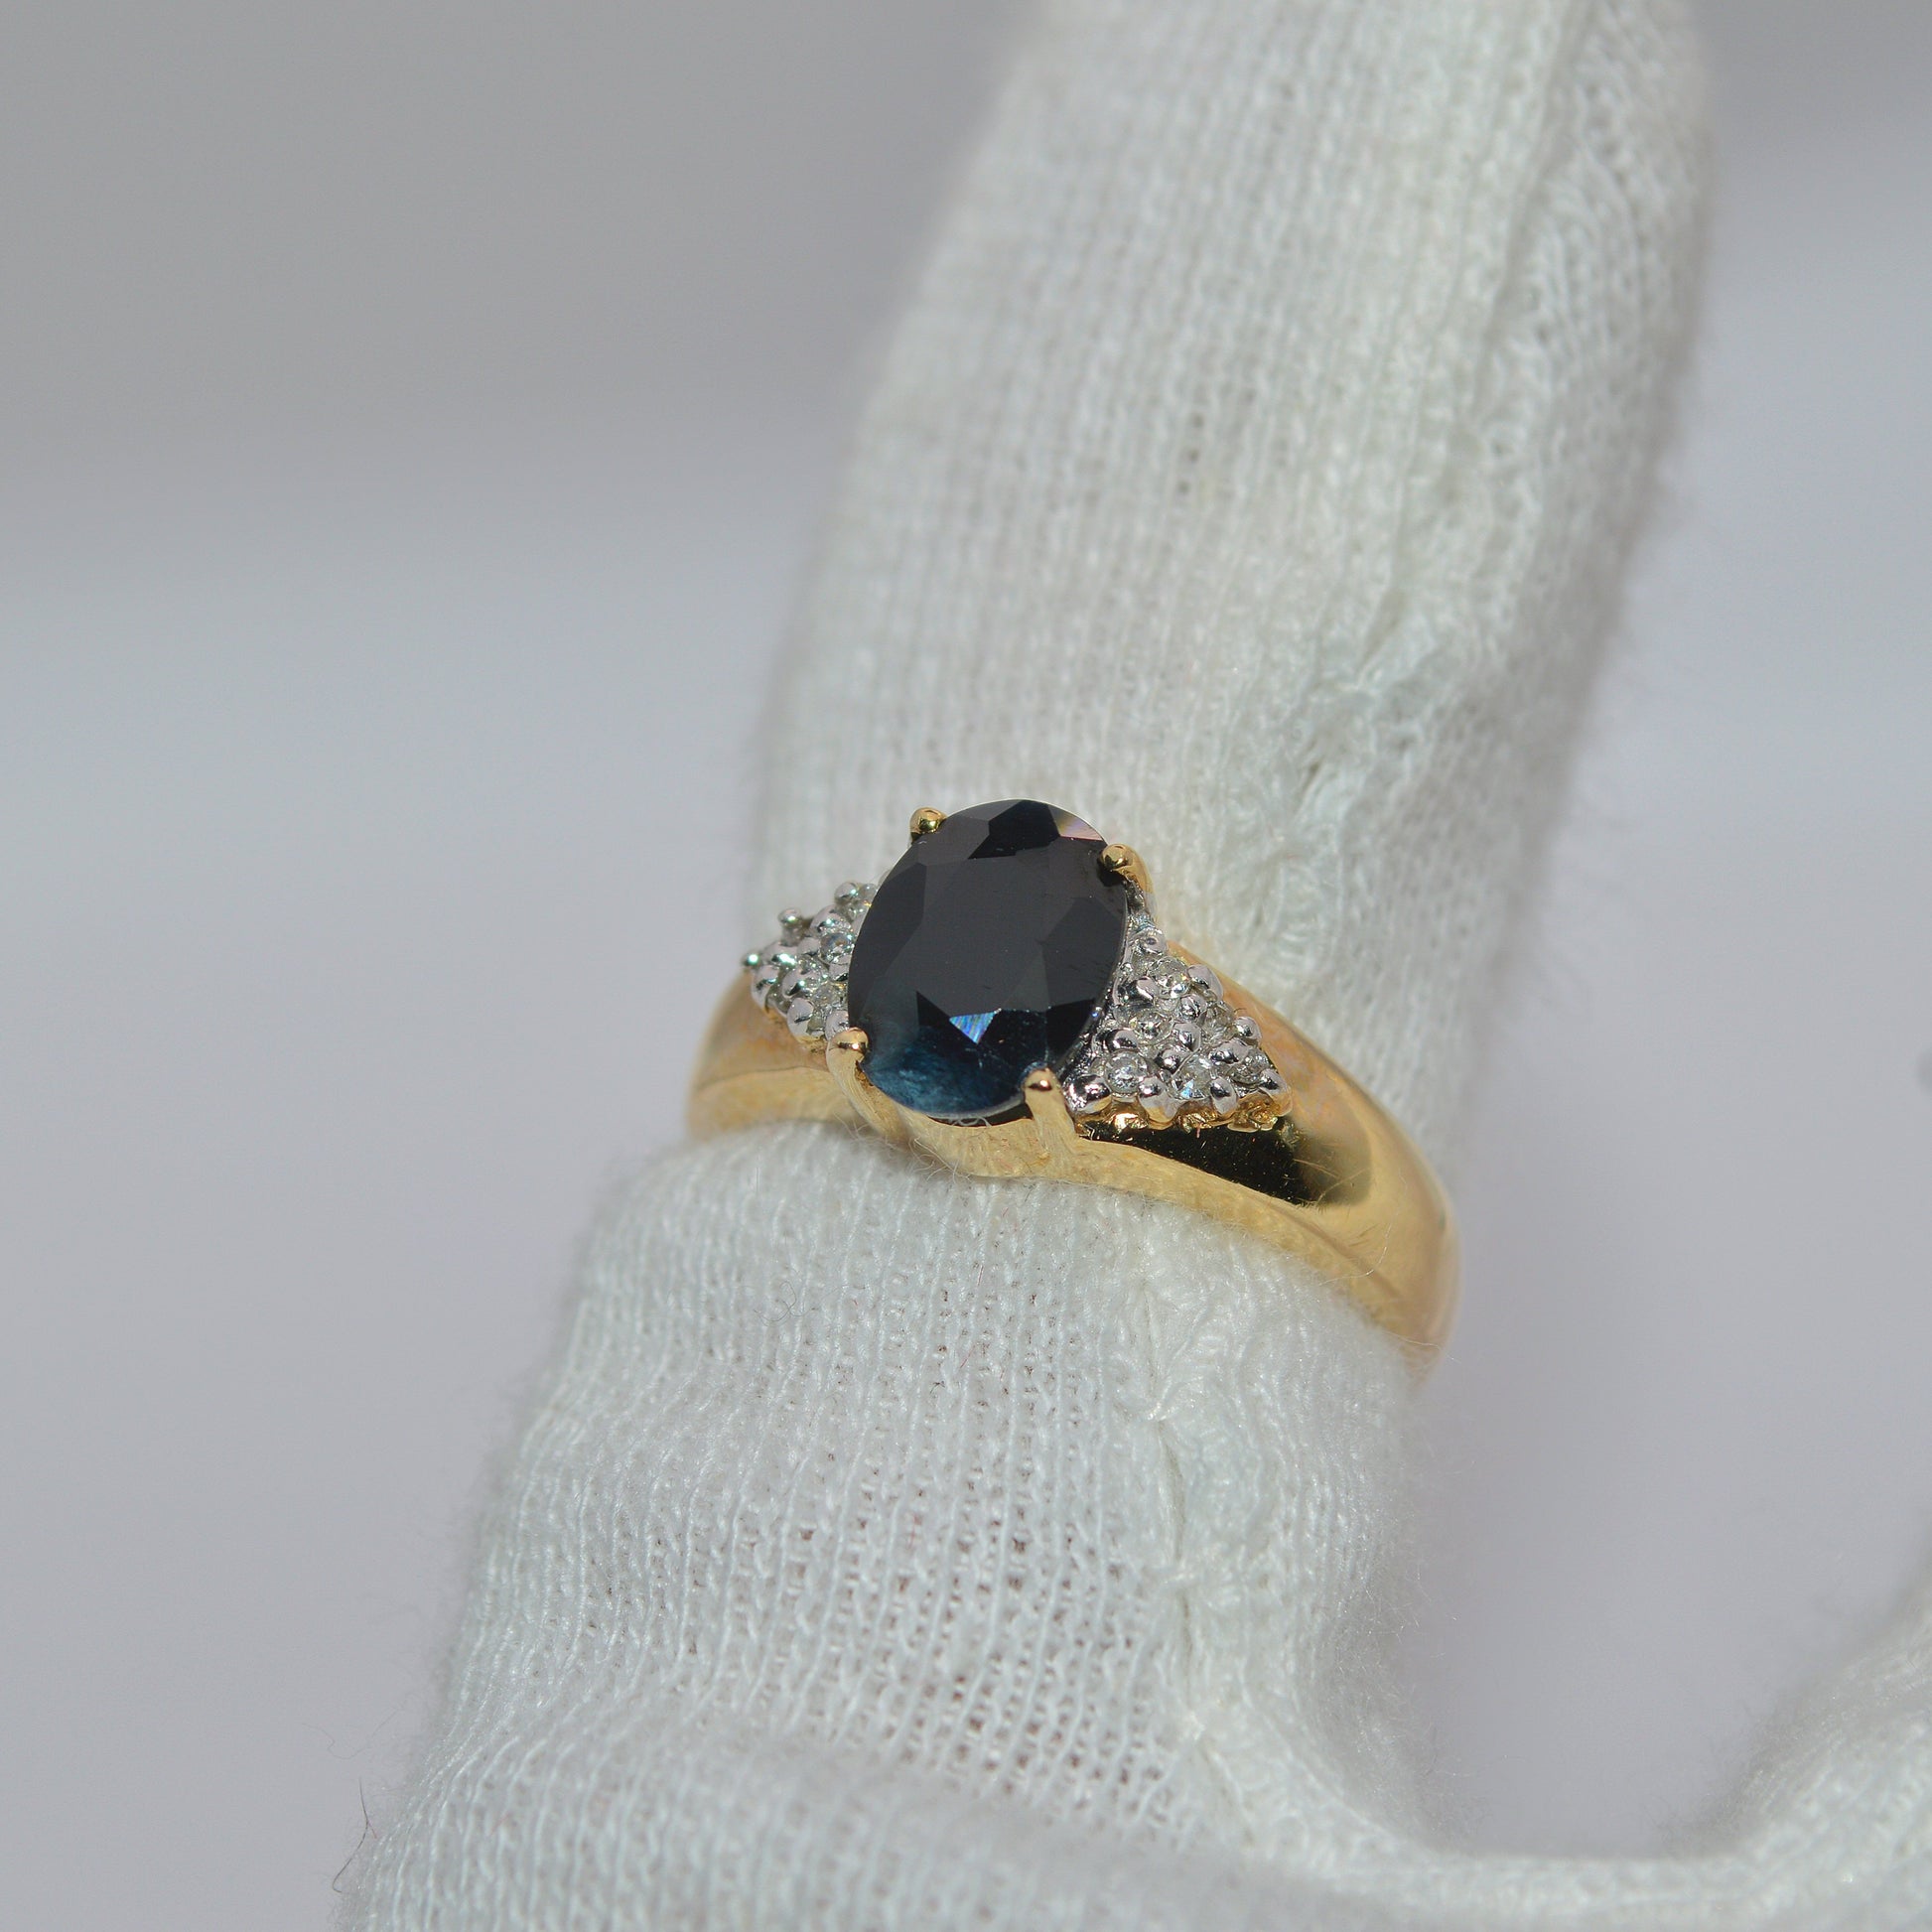 9ct Gold - Sapphire & Diamond Ring left tilt finger